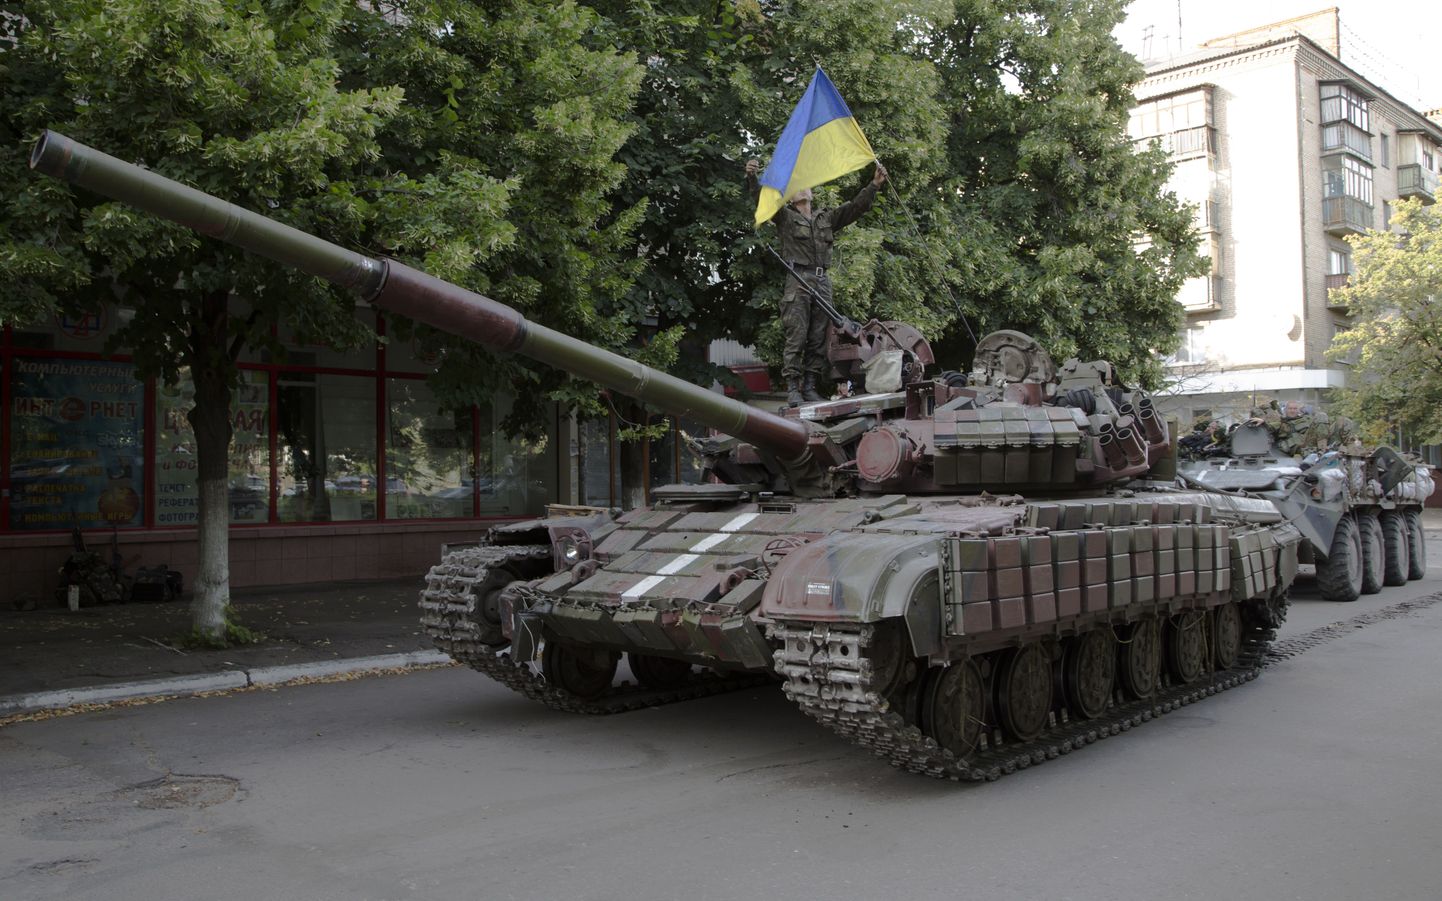 Иллюстративное фото. Танк украинской армии.